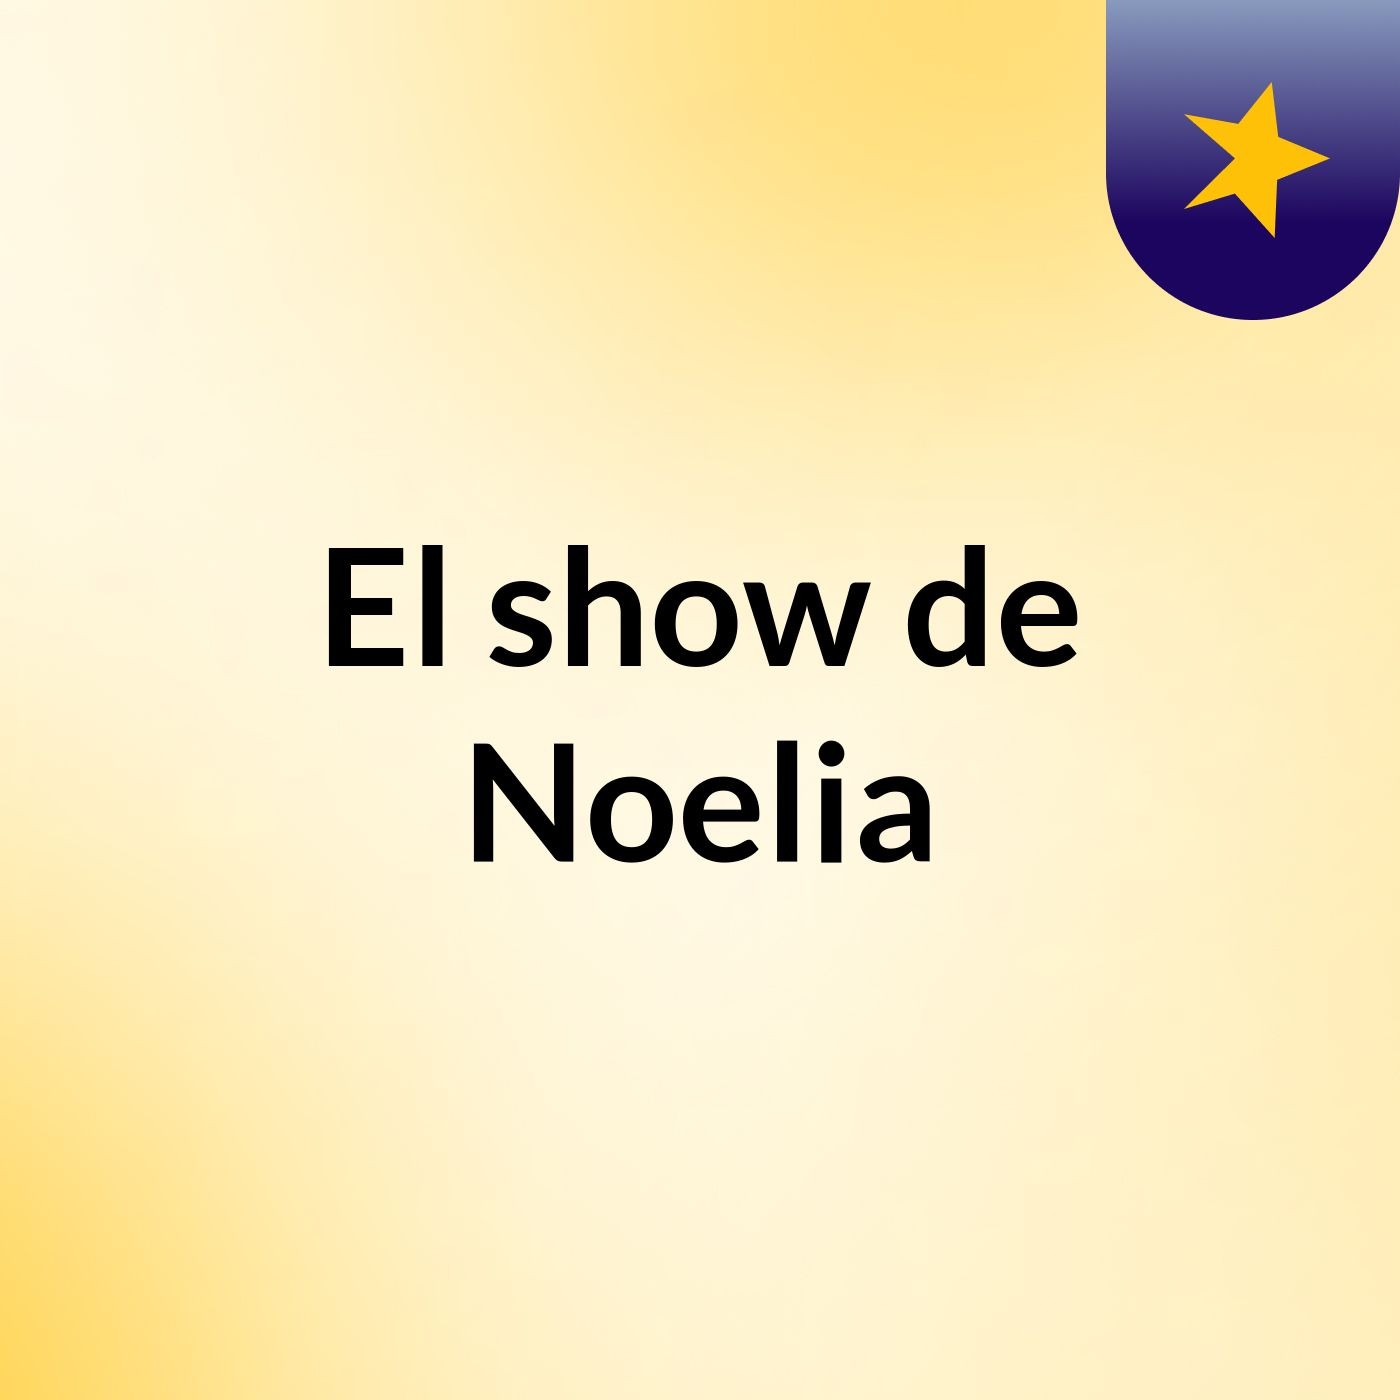 El show de Noelia